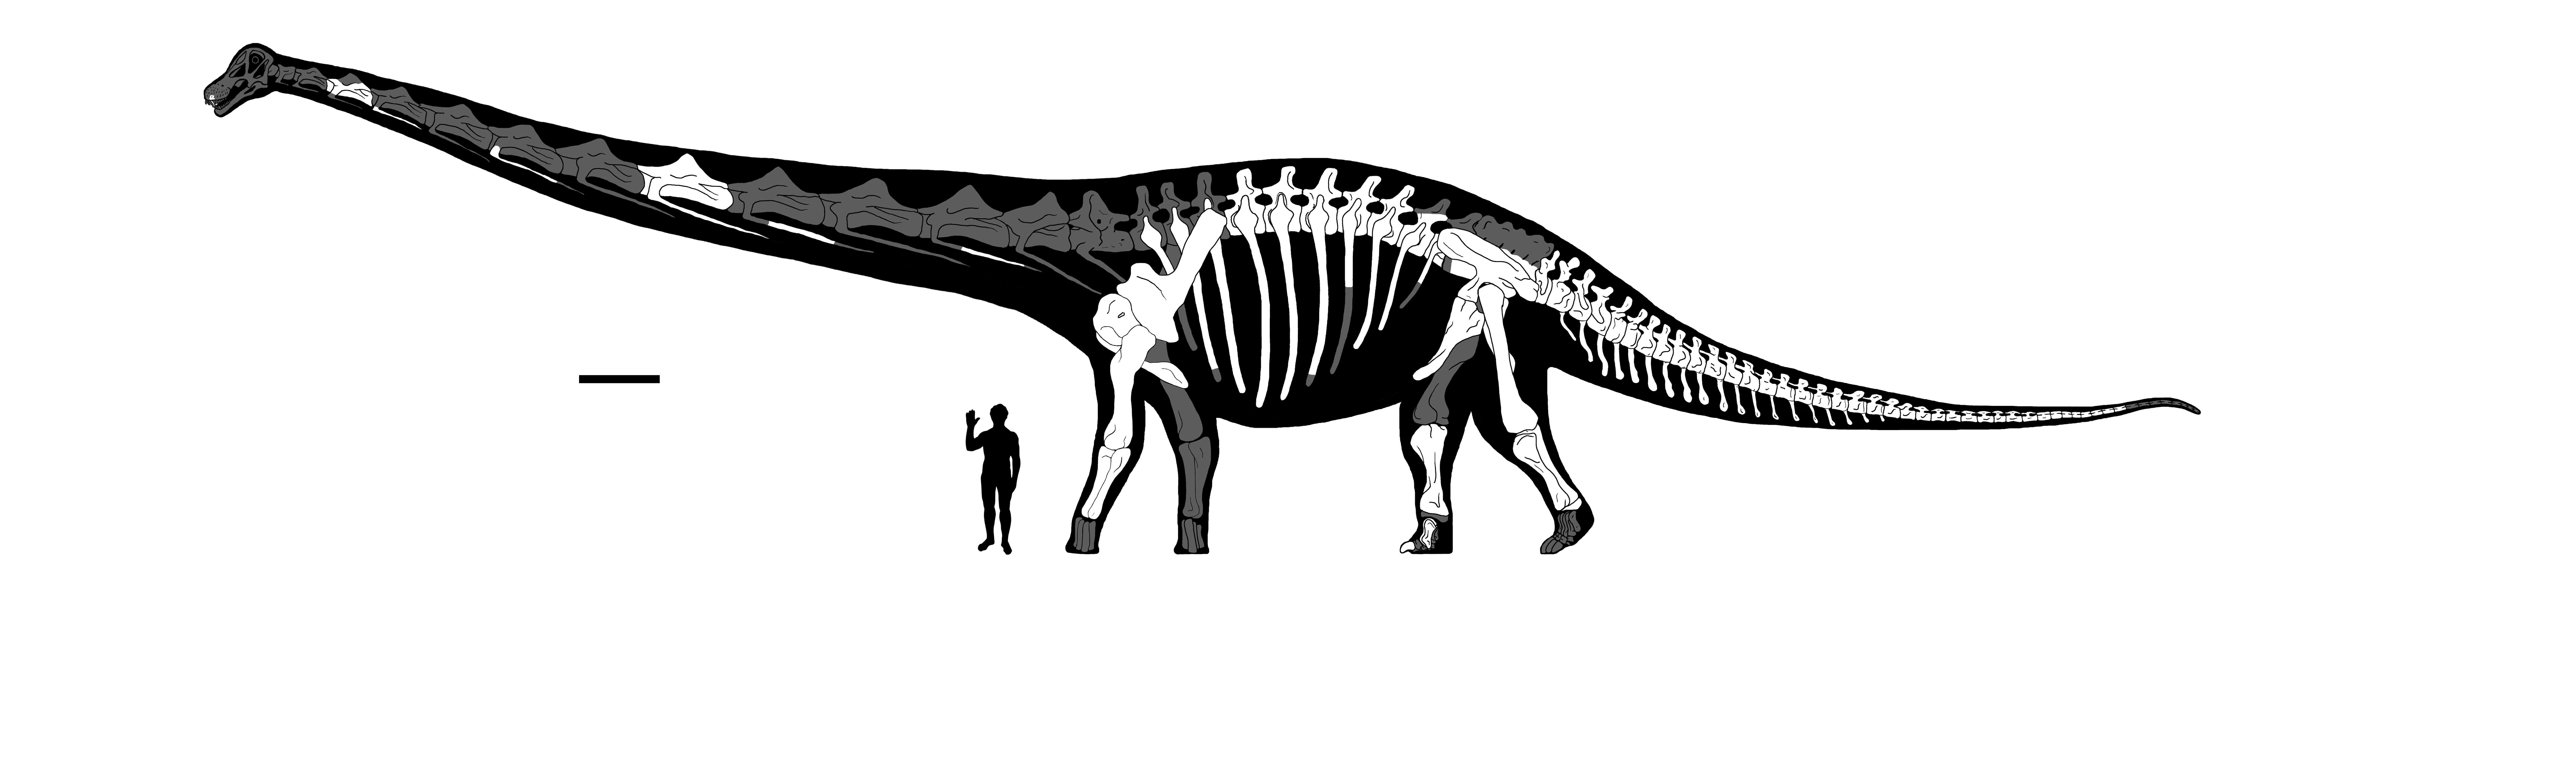 Kreslená rekonstrukce veleještěra Dreadnoughtus schrani  s bíle vyznačenými nalezenými fosiliemi kostí (Lacovara et al.) v porovnání s lidskou postavou. Úsečka je 1 m dlouhá. 